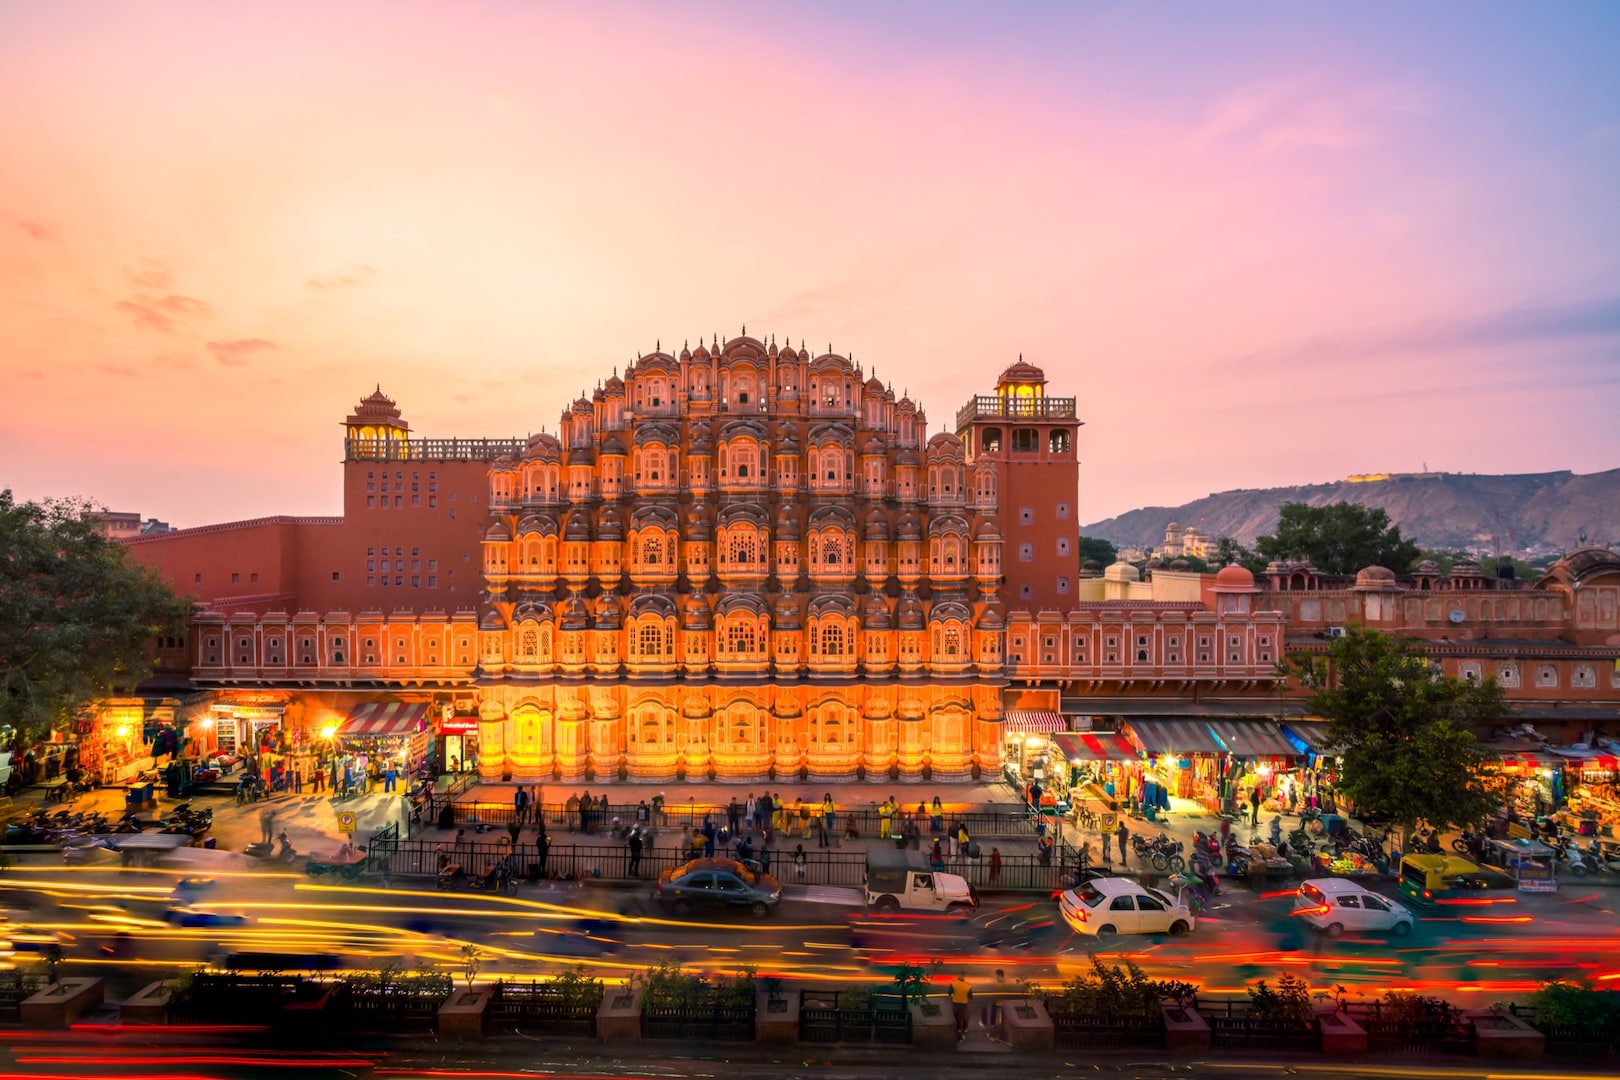 Cung điện Hawa Mahal, điểm du lịch nổi tiếng ở thành phố Jaipur, Ấn Độ